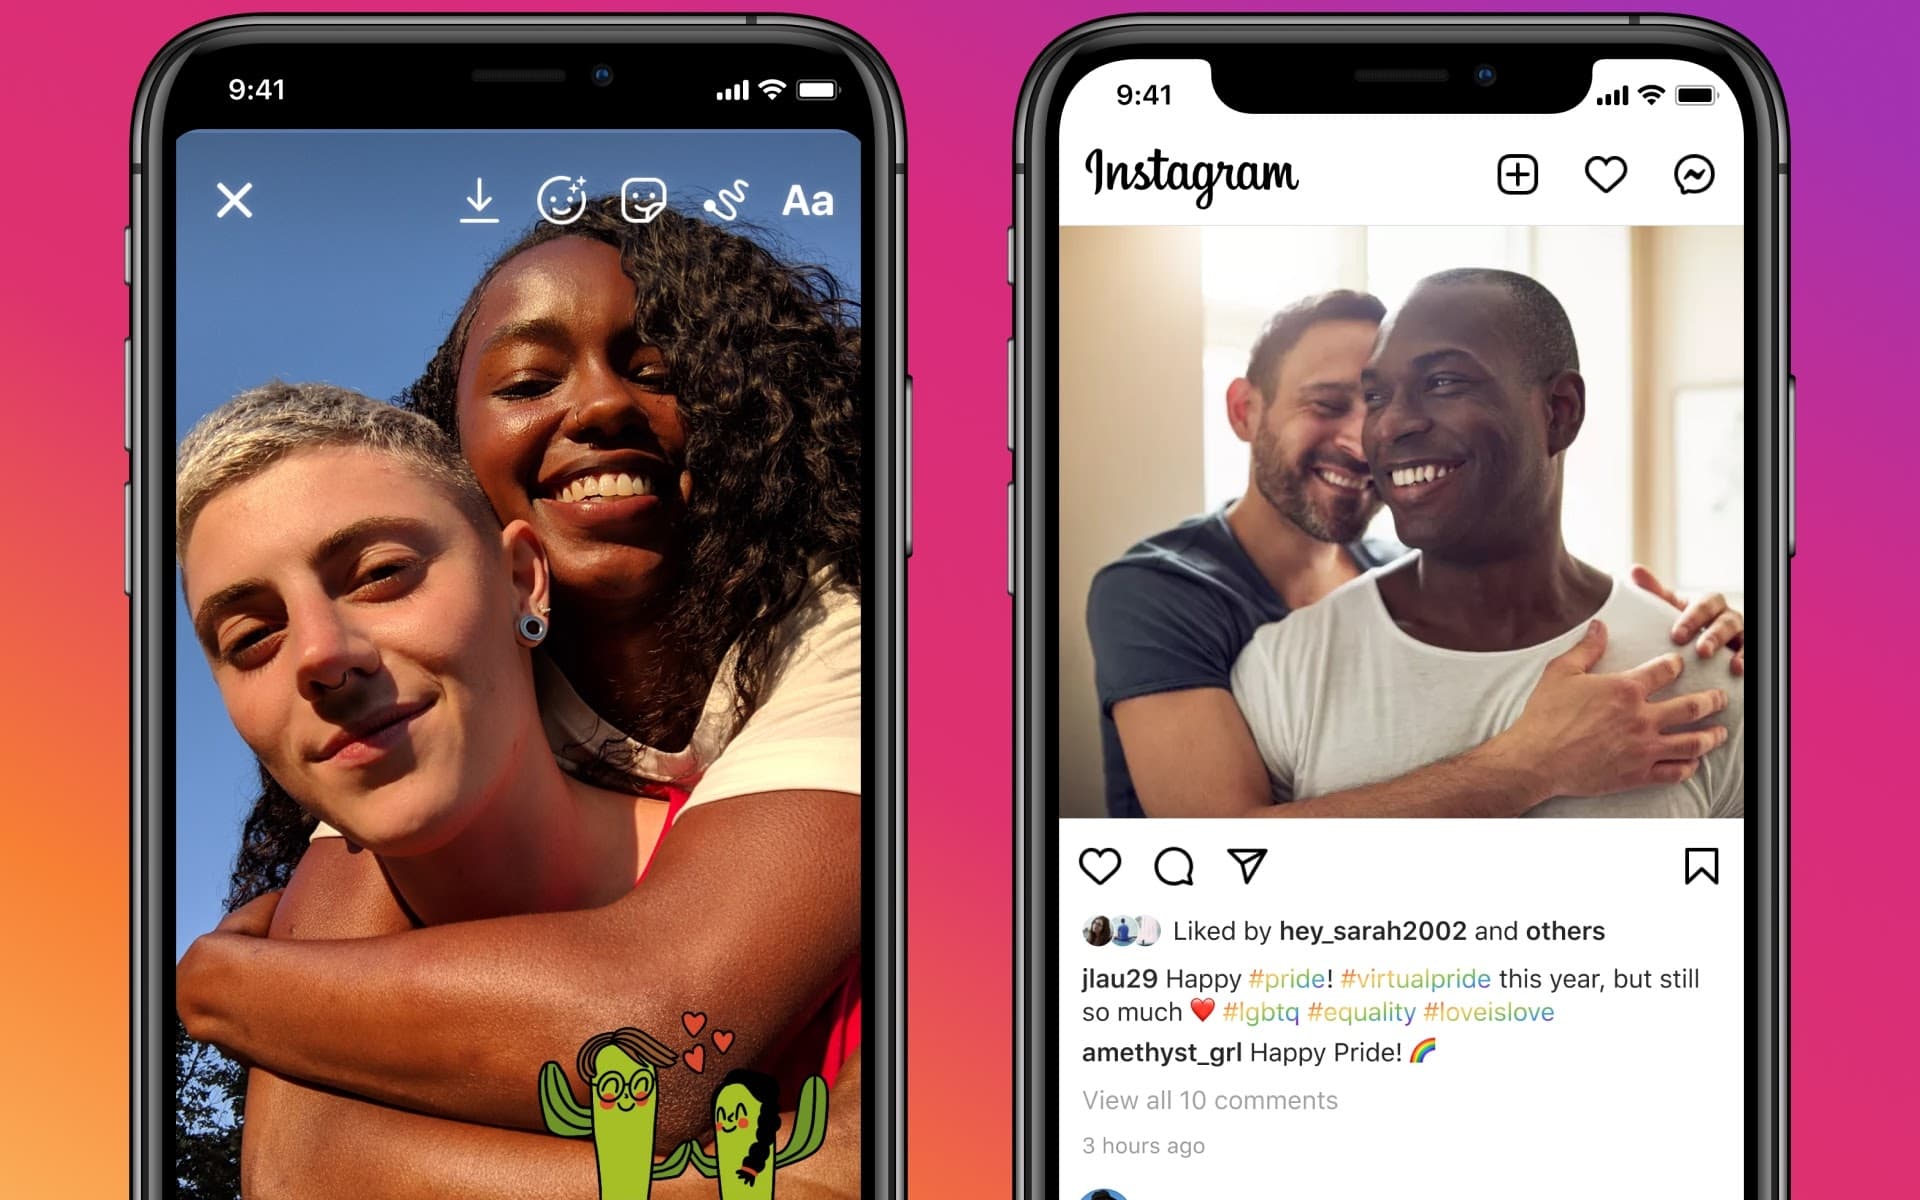 I nuovi adesivi su Instagram ispirati al Pride